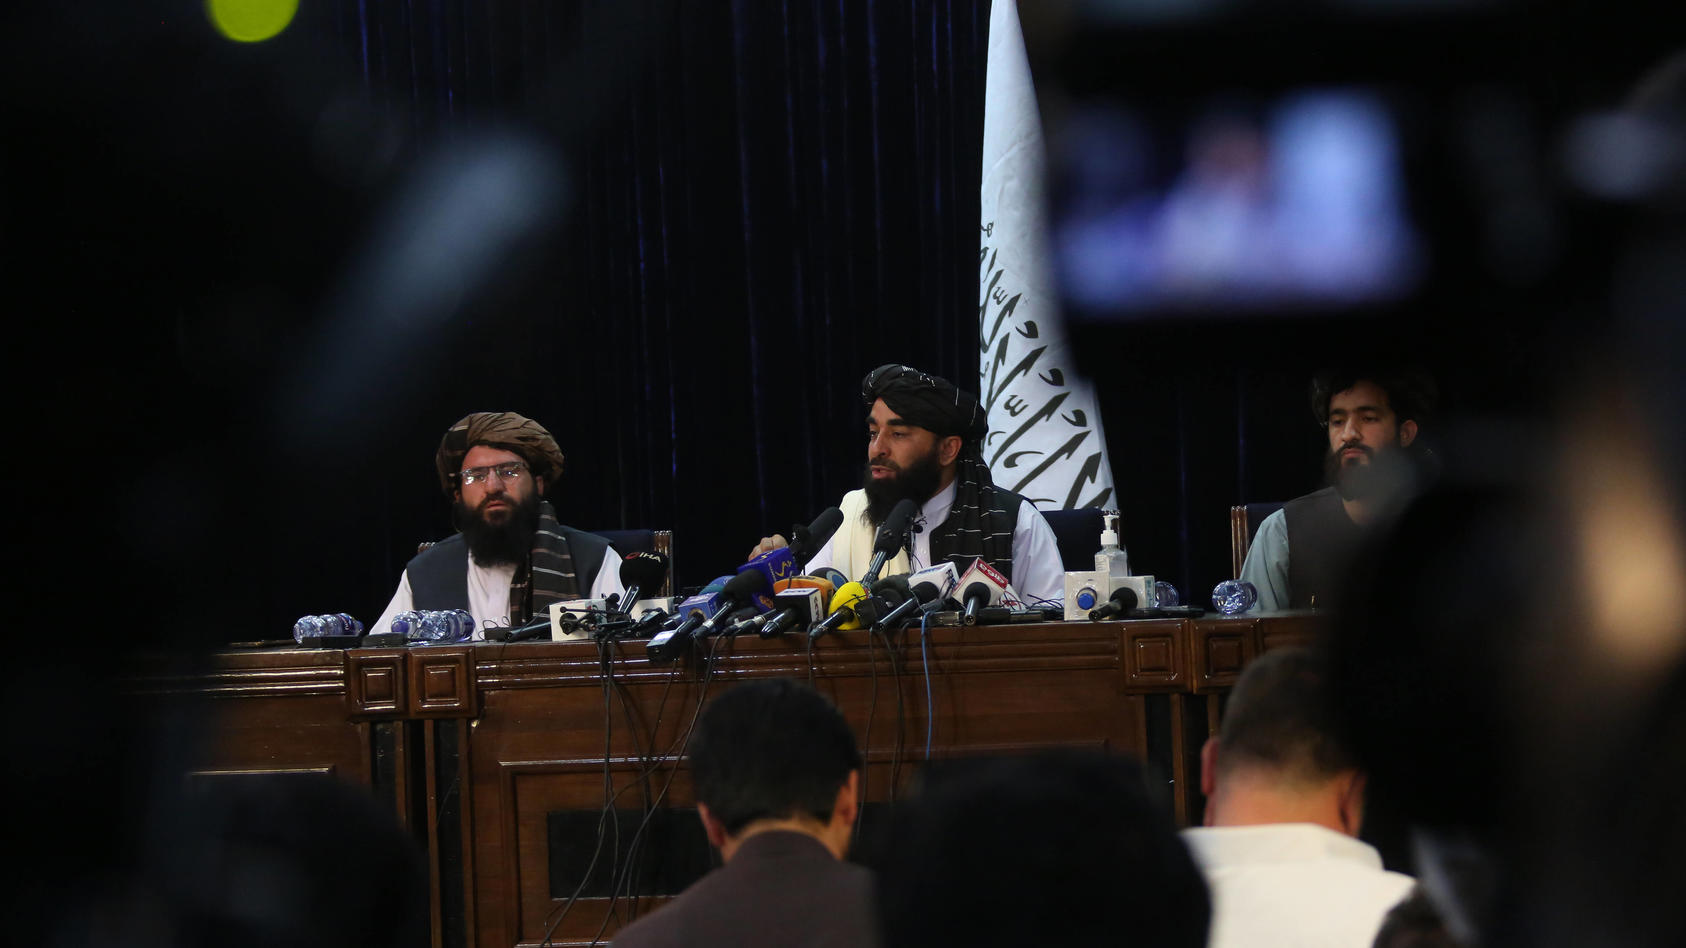  Taliban Sprecher Zabihullah Mujahid C, Rear bei einer Pressekonferenz am Aug. 17, 2021